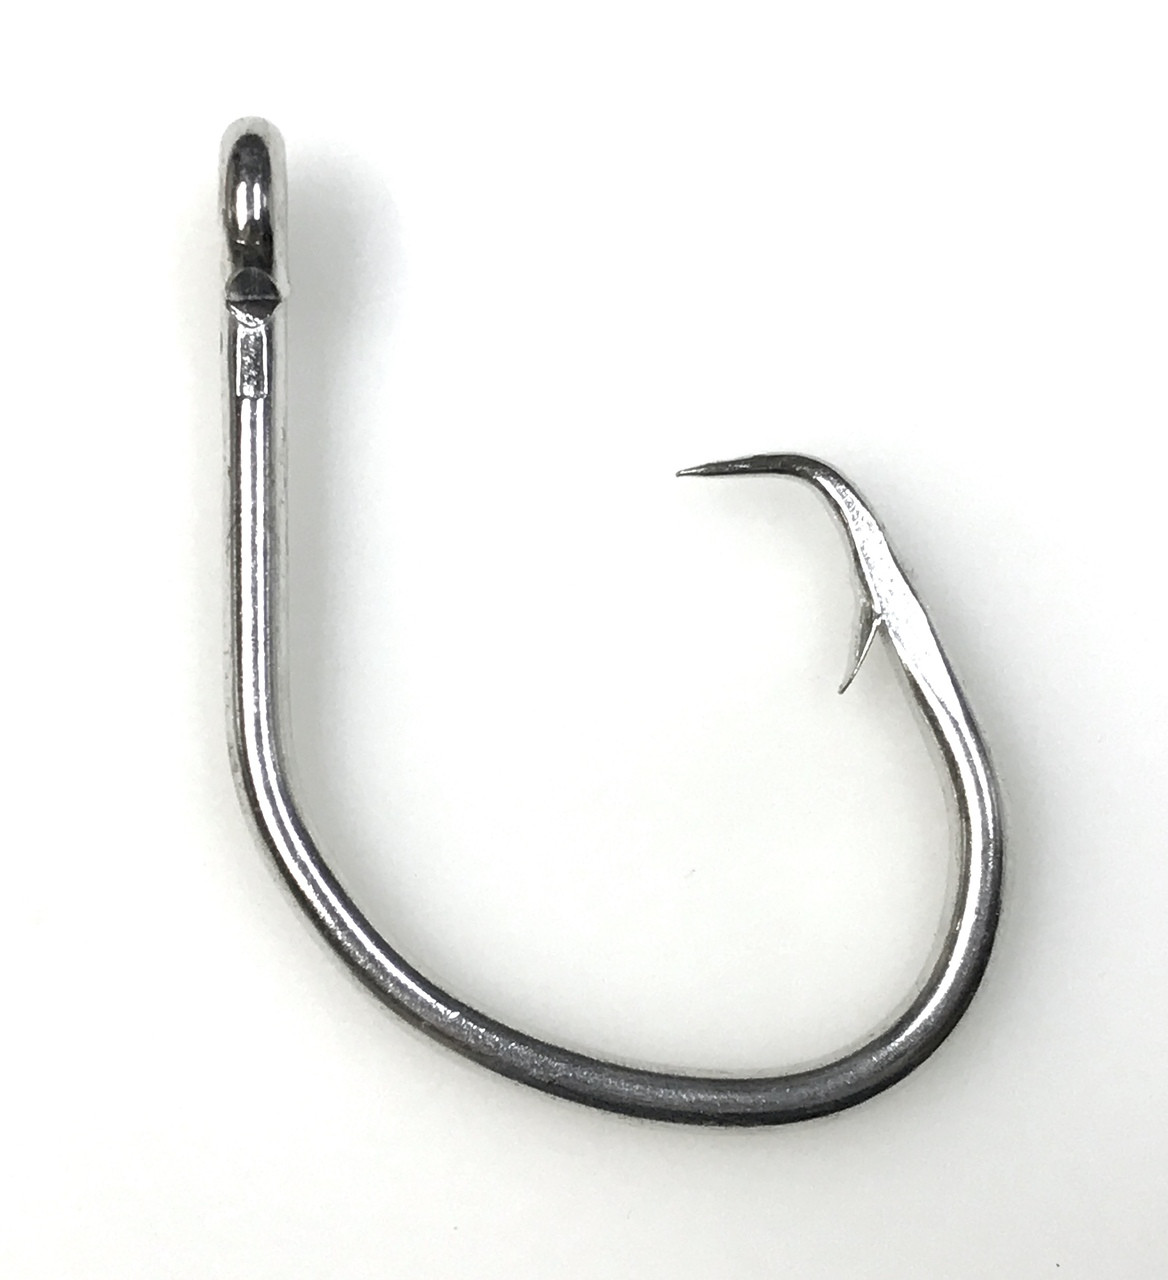 50pcs Size 10/0 Fishing 4x Strong circle hook offset black nickel